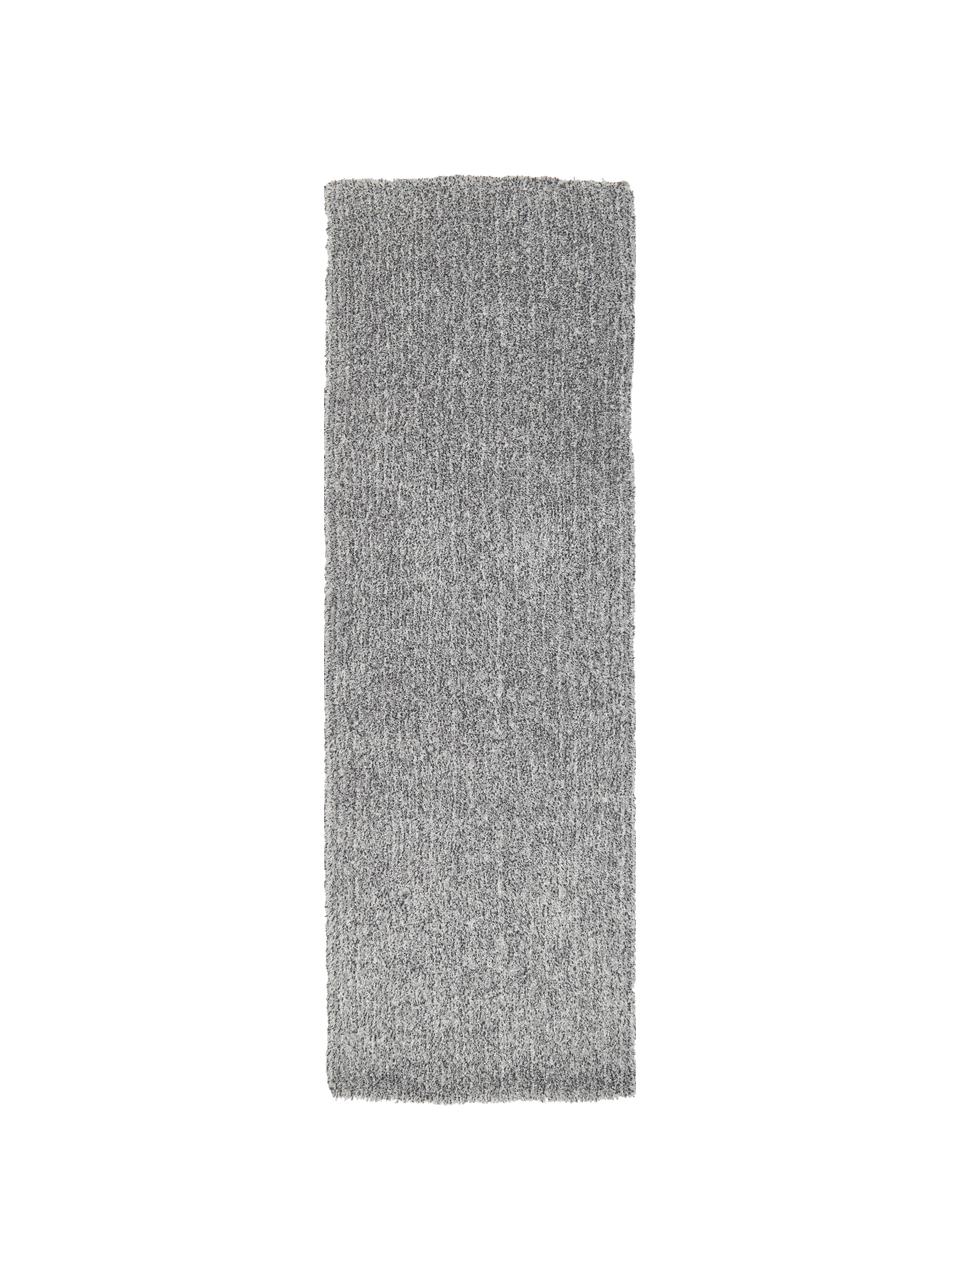 Fluffy hoogpolige loper Marsha in grijs, Grijs, wit, B 80 x L 200 cm